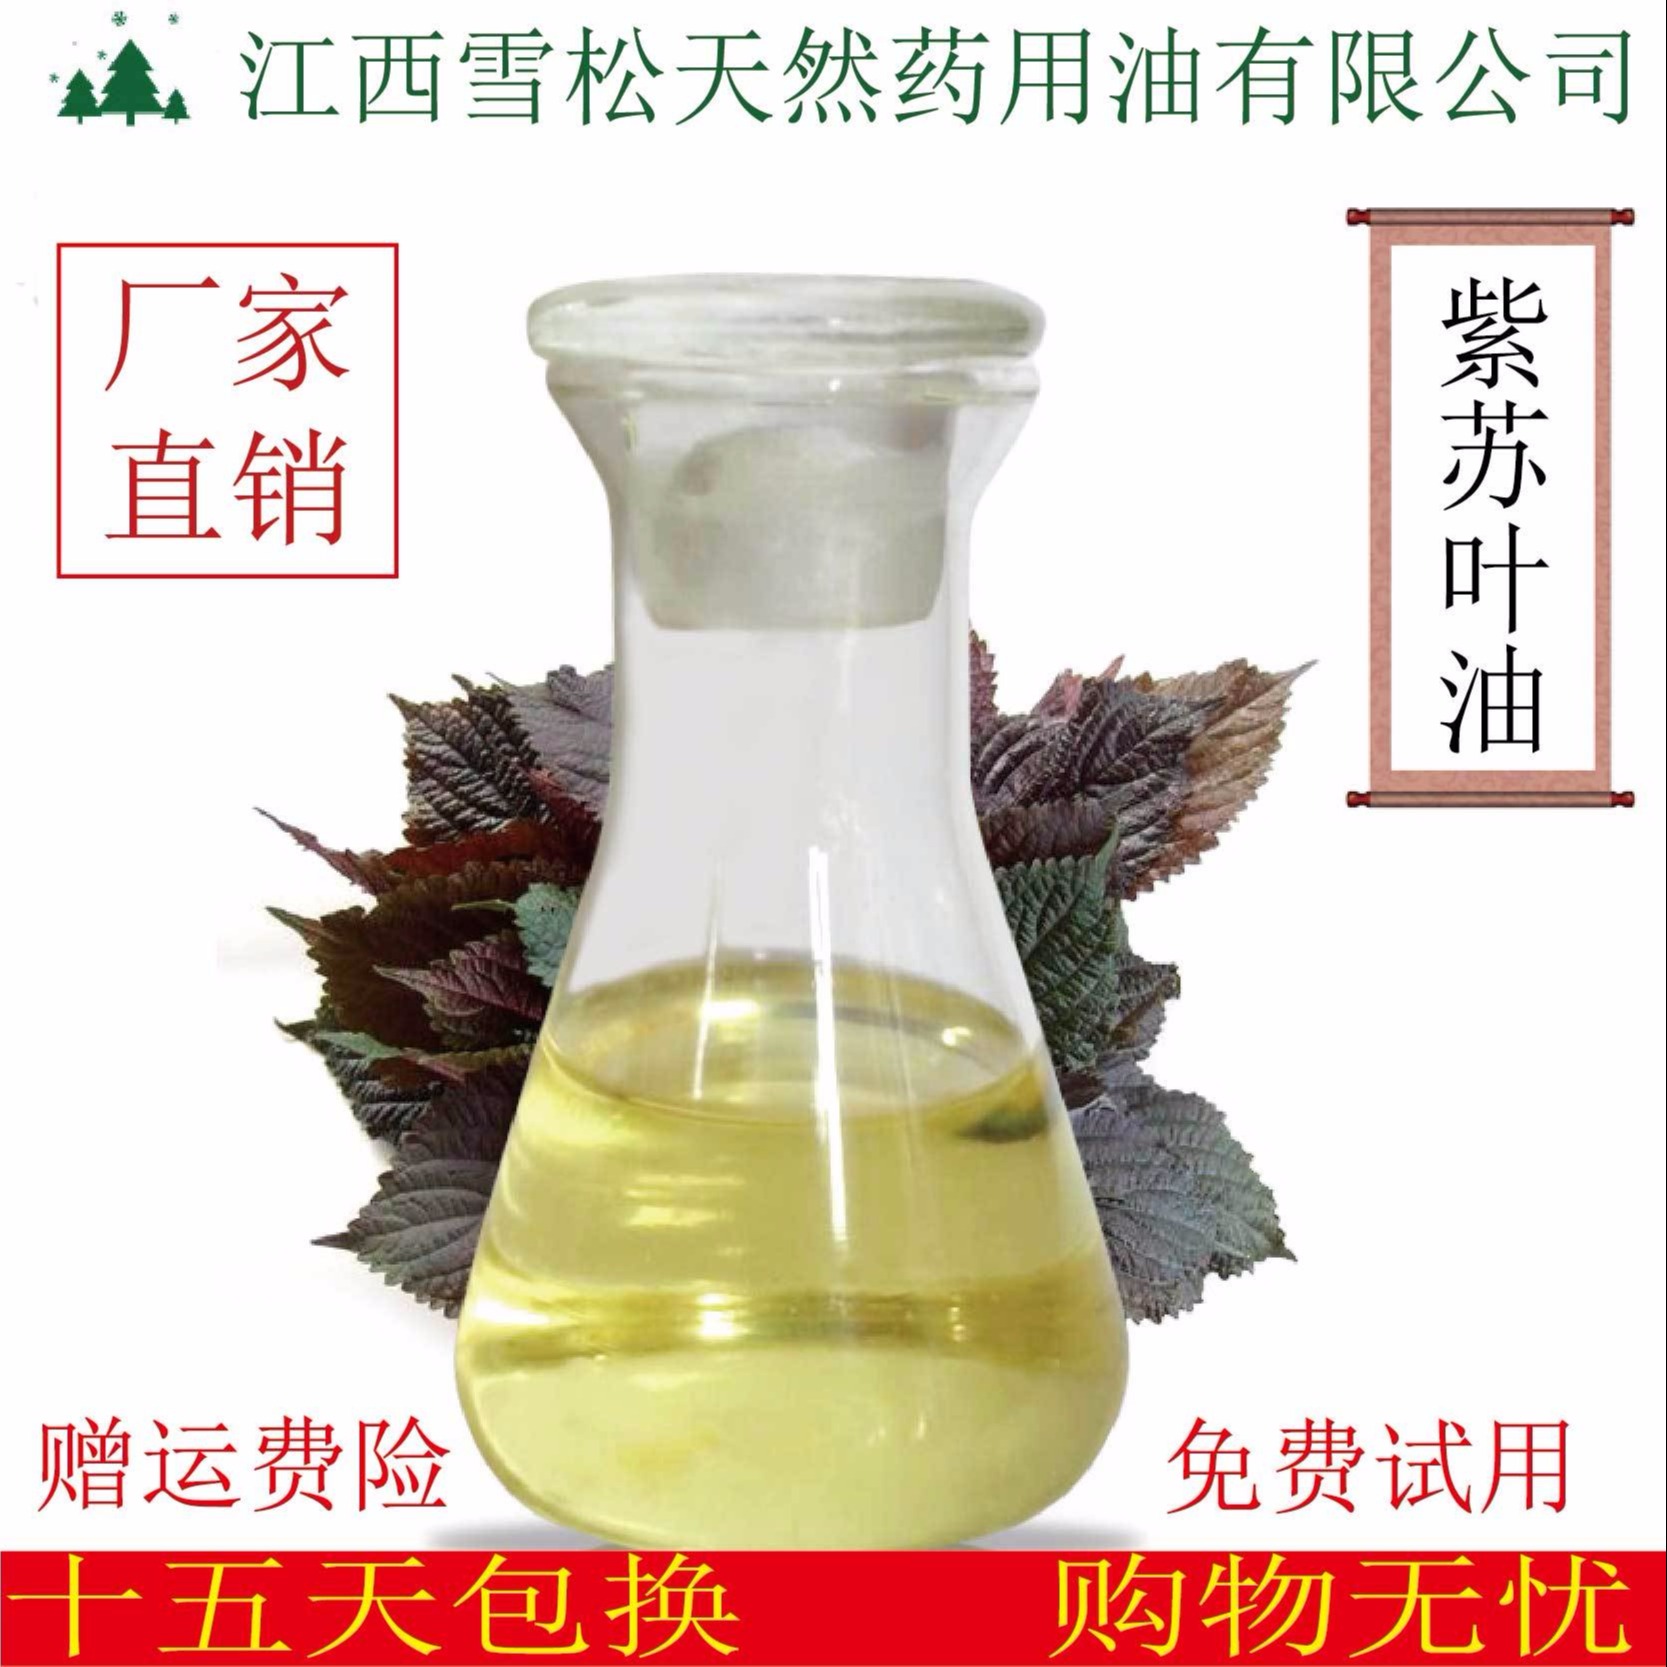 紫苏叶油 天然植物提取紫苏叶精油  江西雪松现货供应图片